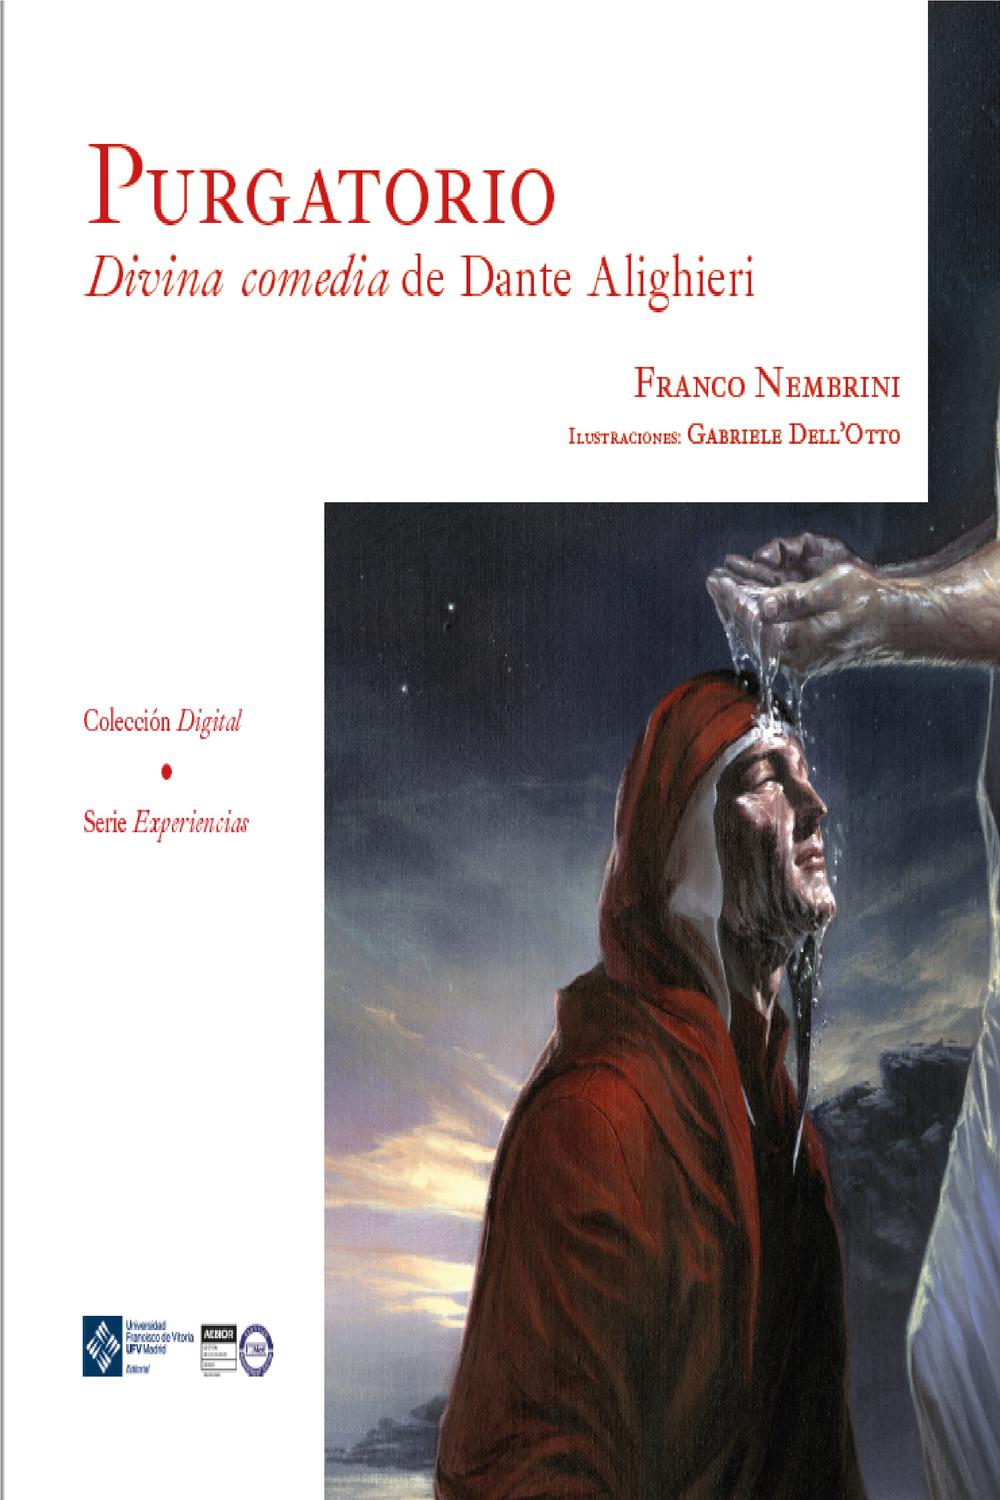 Purgatorio. Divina comedia de Dante Alighieri - Franco Nembrini, Gabriele Dell'Otto,,